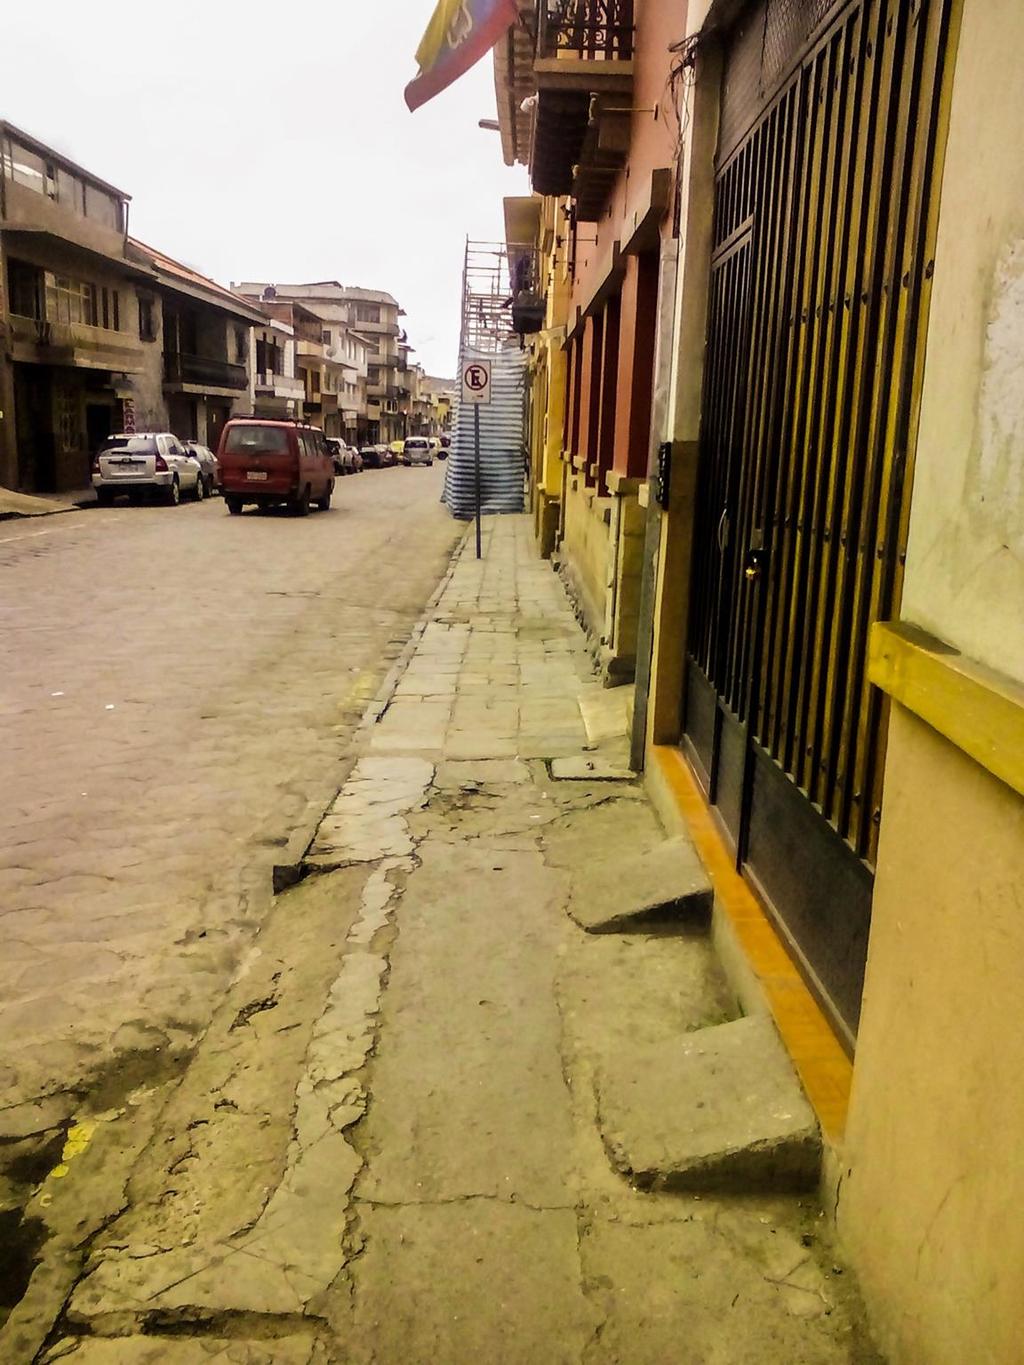 Es Cuenca una ciudad caminable? Tener aceras no es suficiente. Estas necesitan tener el ancho adecuado y estar libre de obstáculos temporales o permanentes.